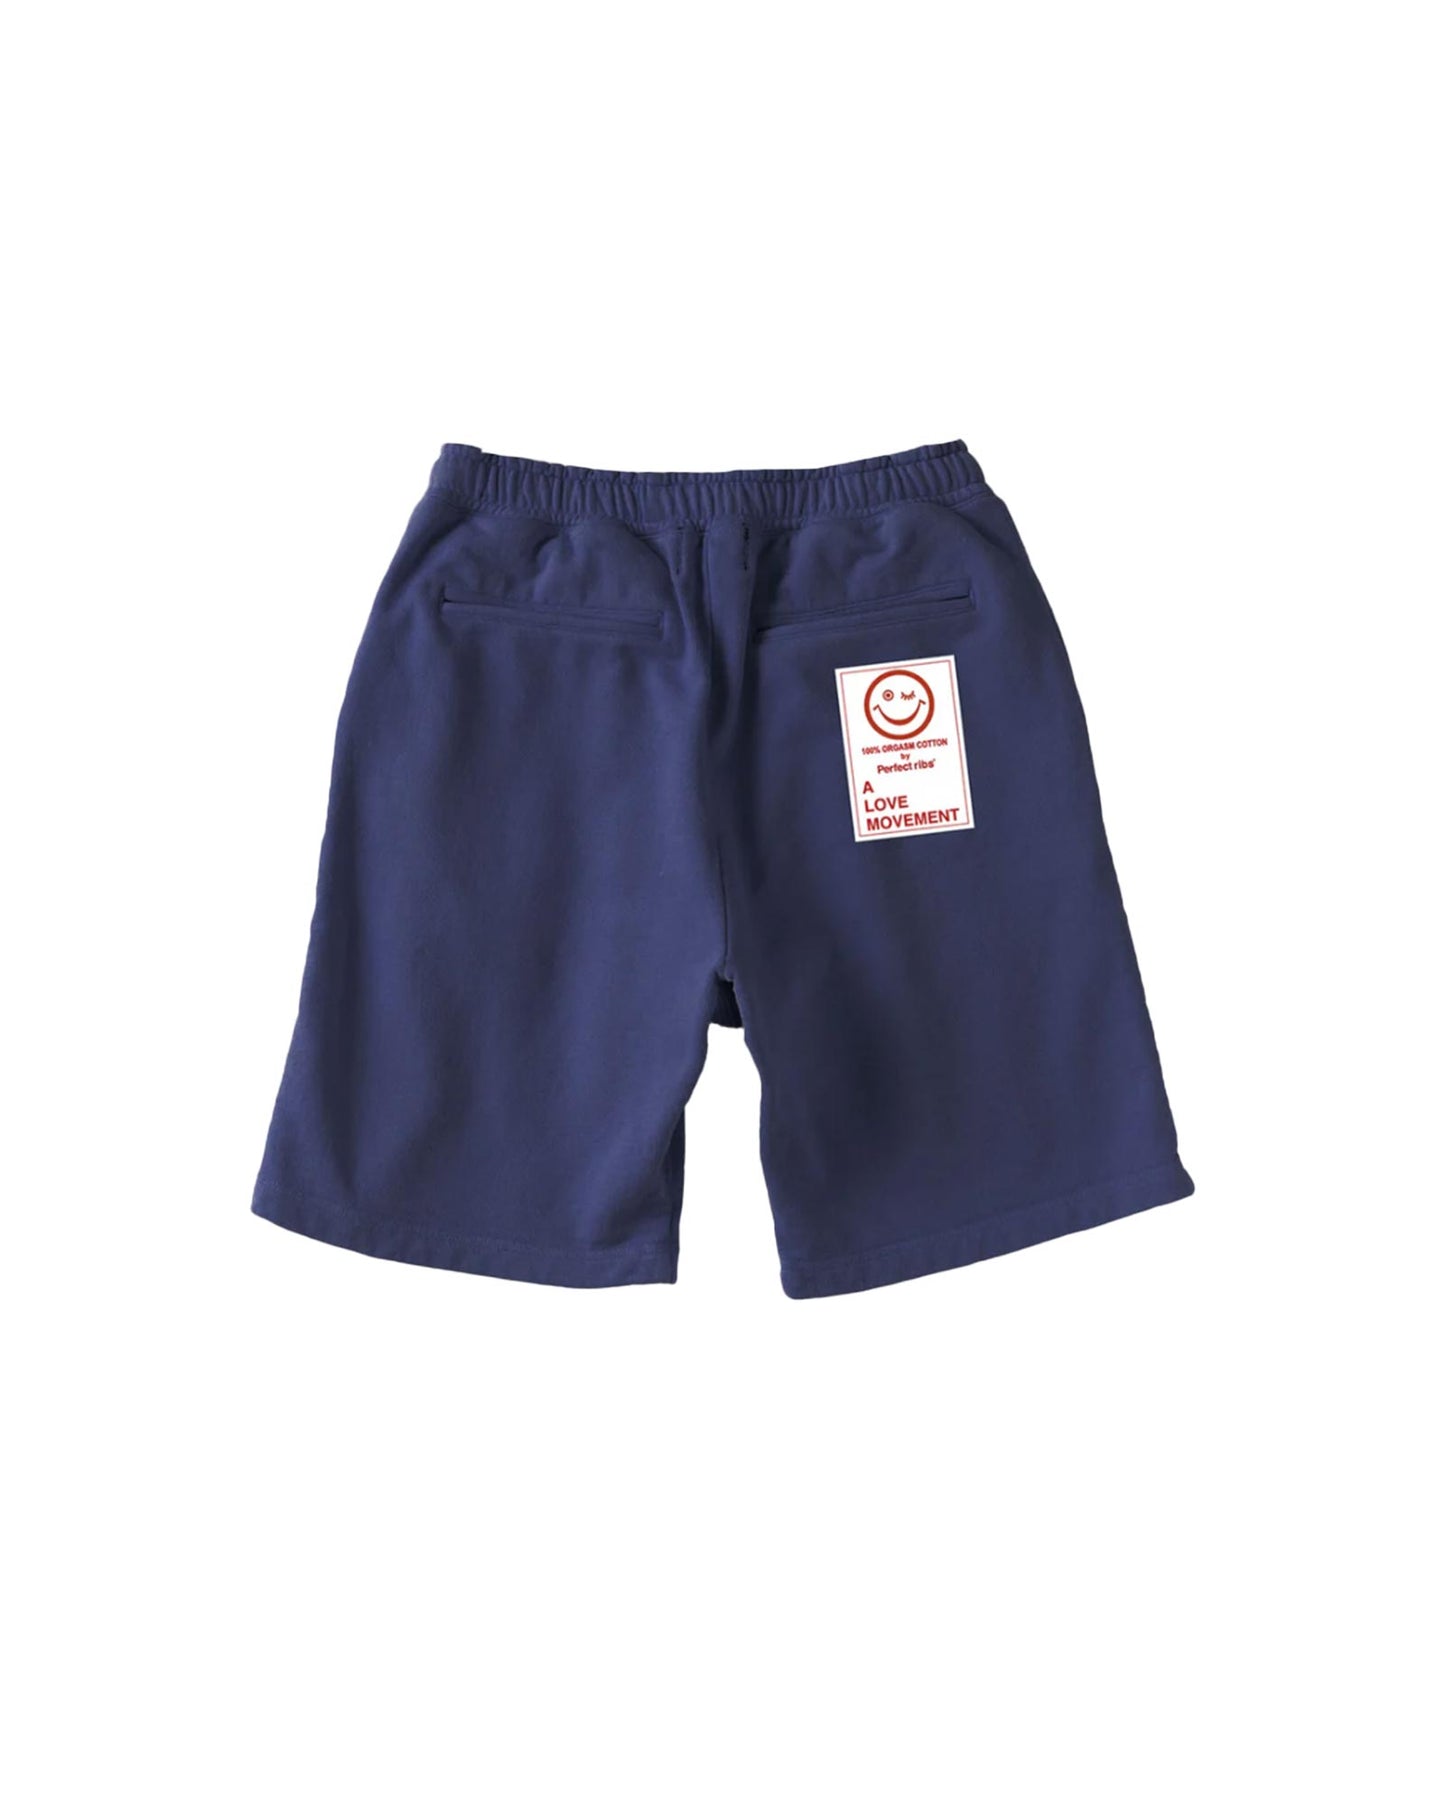 パーフェクトリブス/(adios & RELAX) Sweat Short Pants/ショートパンツ/Navy